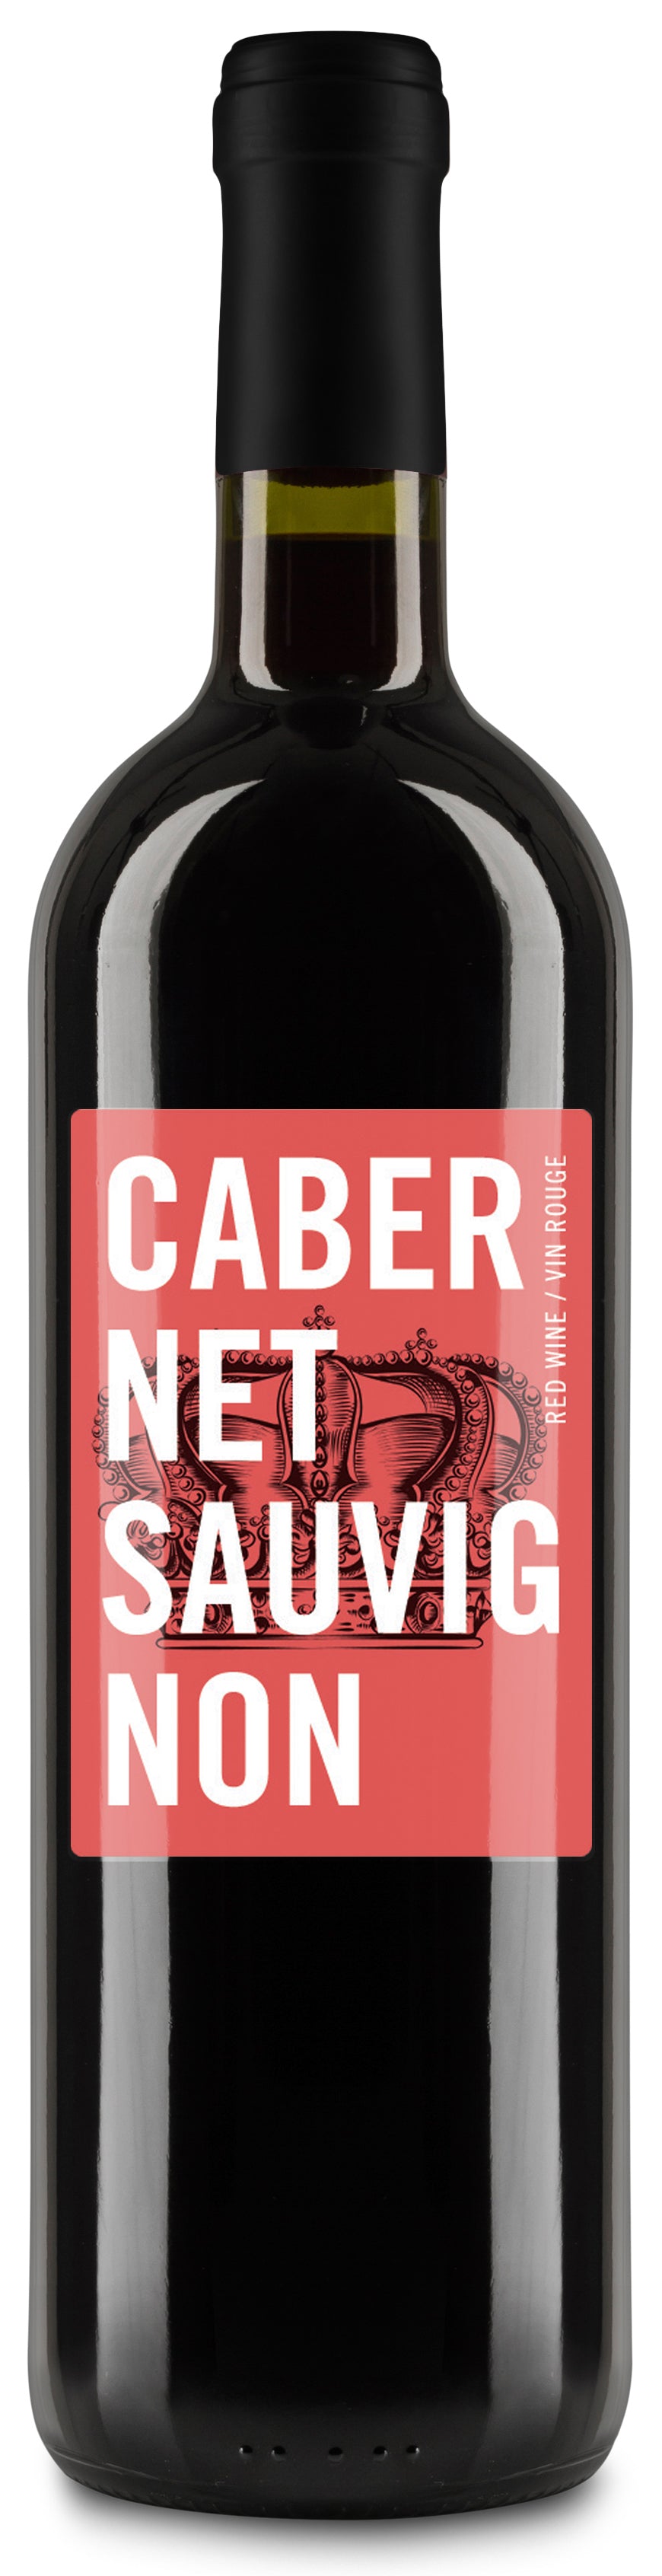 Labels - Cabernet Sauvignon - GVI - The Wine Warehouse CA